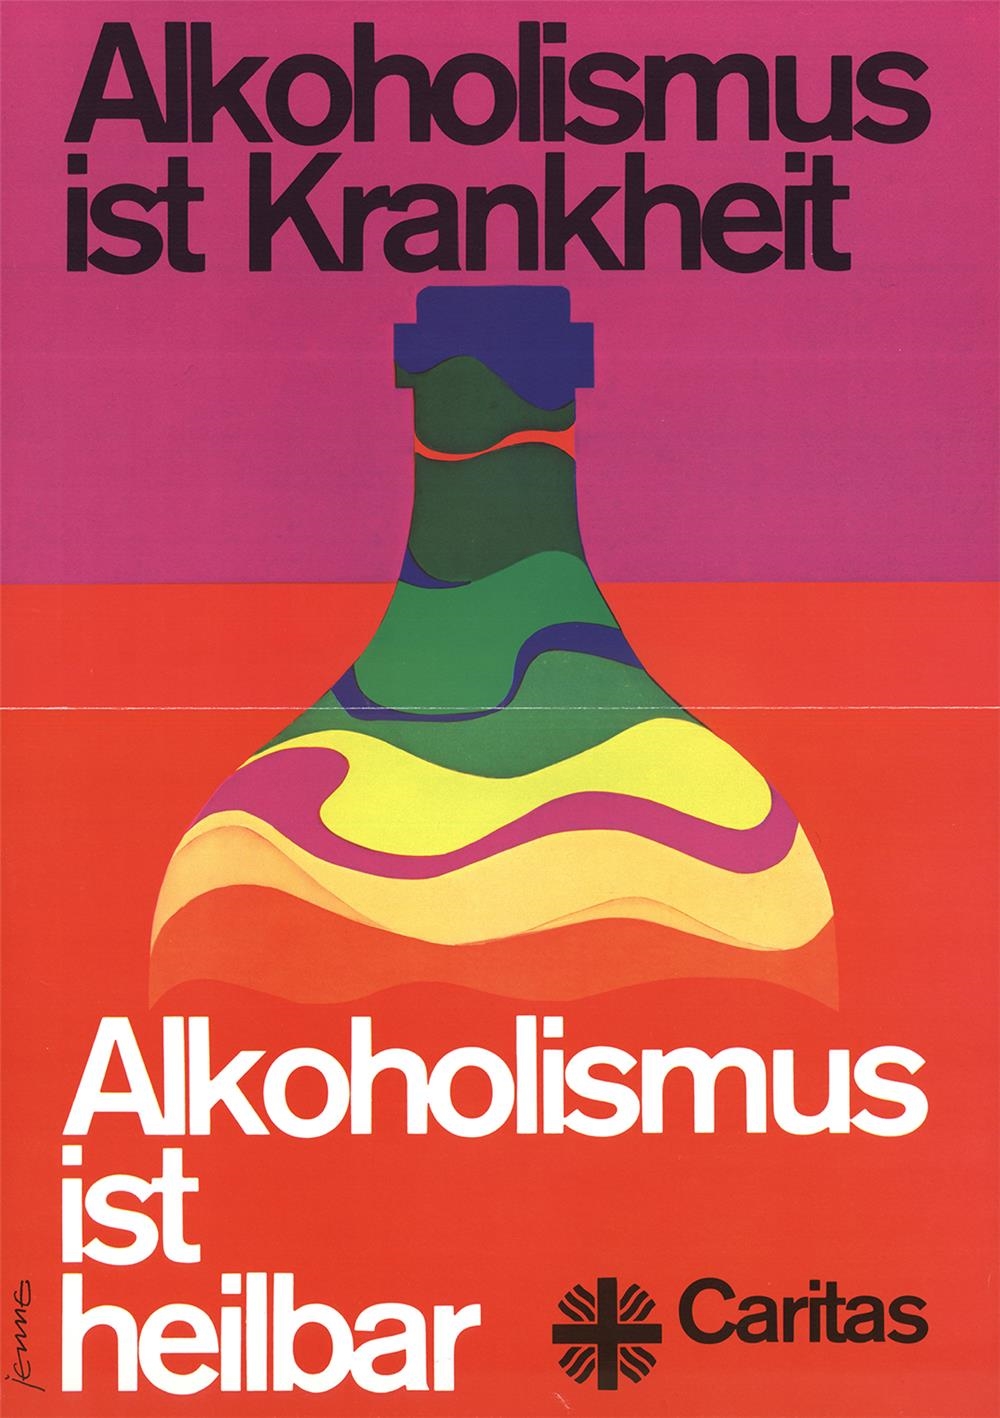 Alkoholismus ist heilbar. Poster Drogenberatung der Caritas (1974) (Deutscher Caritasverband e. V.)